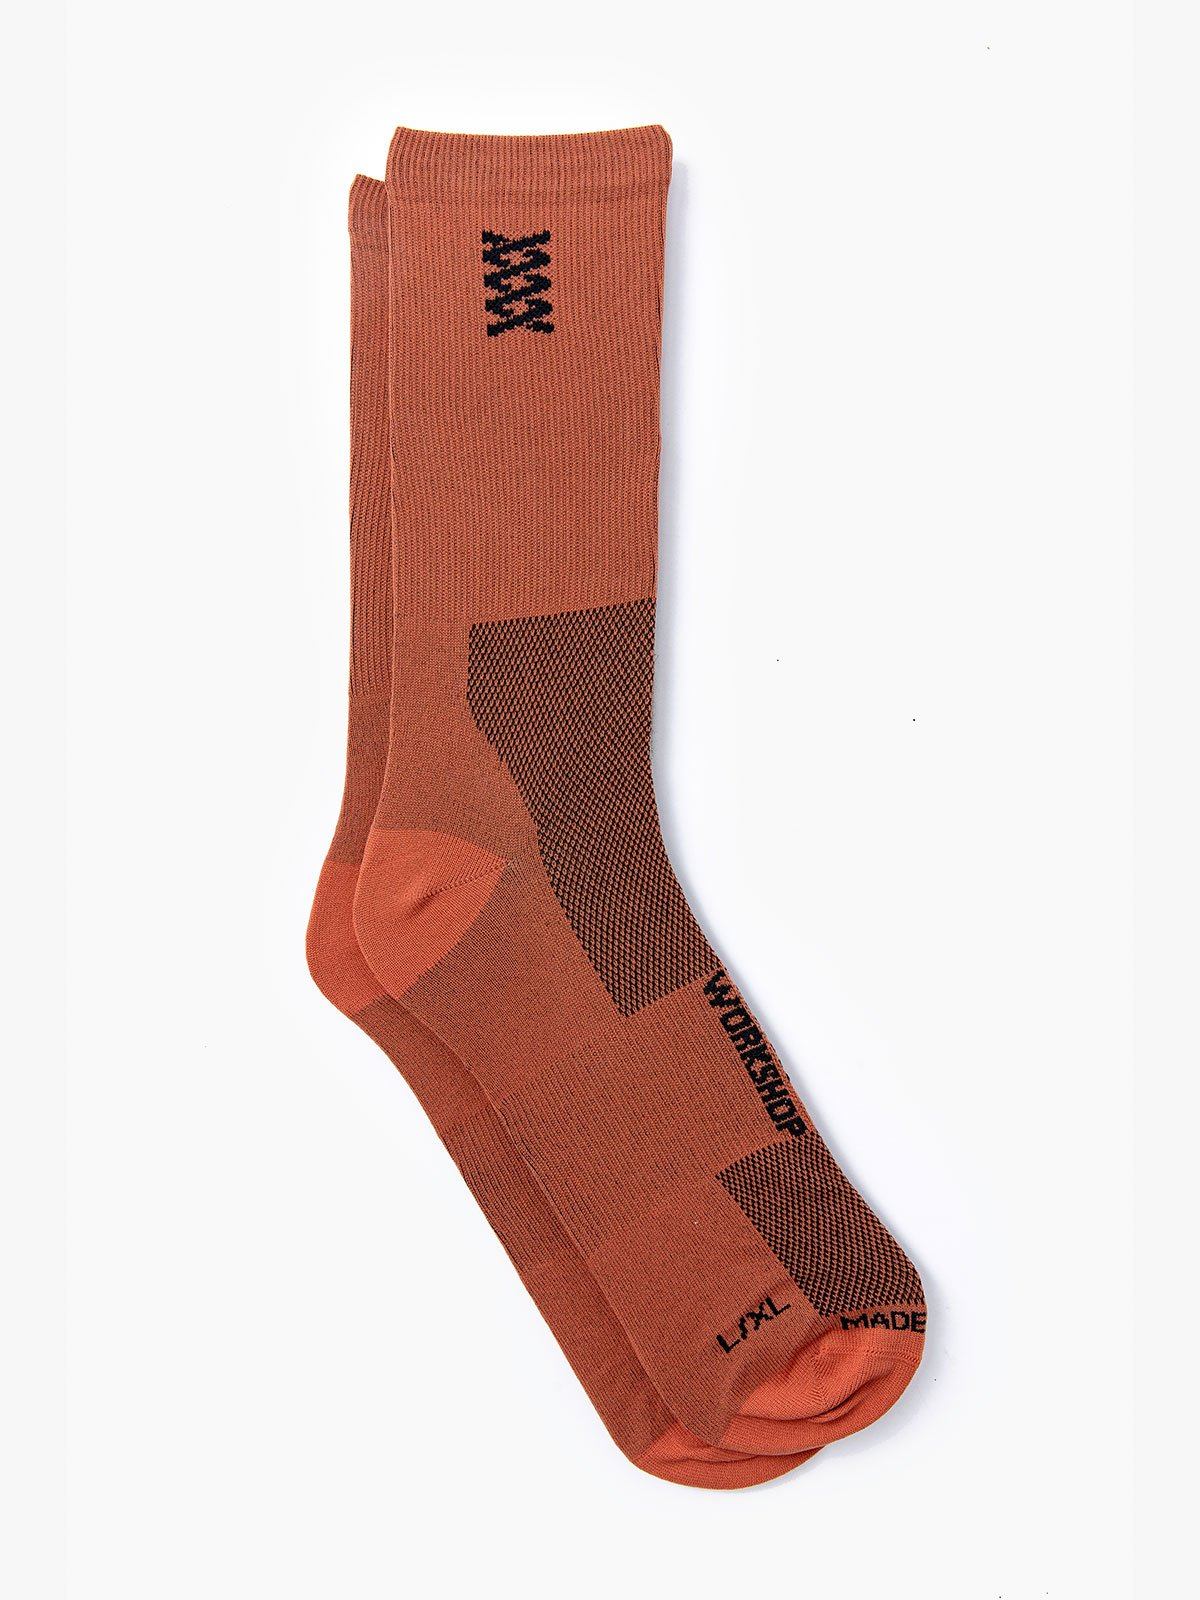 Mission Pro Socks by Mission Workshop - Weerbestendige tassen & technische kleding - San Francisco & Los Angeles - Gemaakt om te weerstaan - Voor altijd gegarandeerd